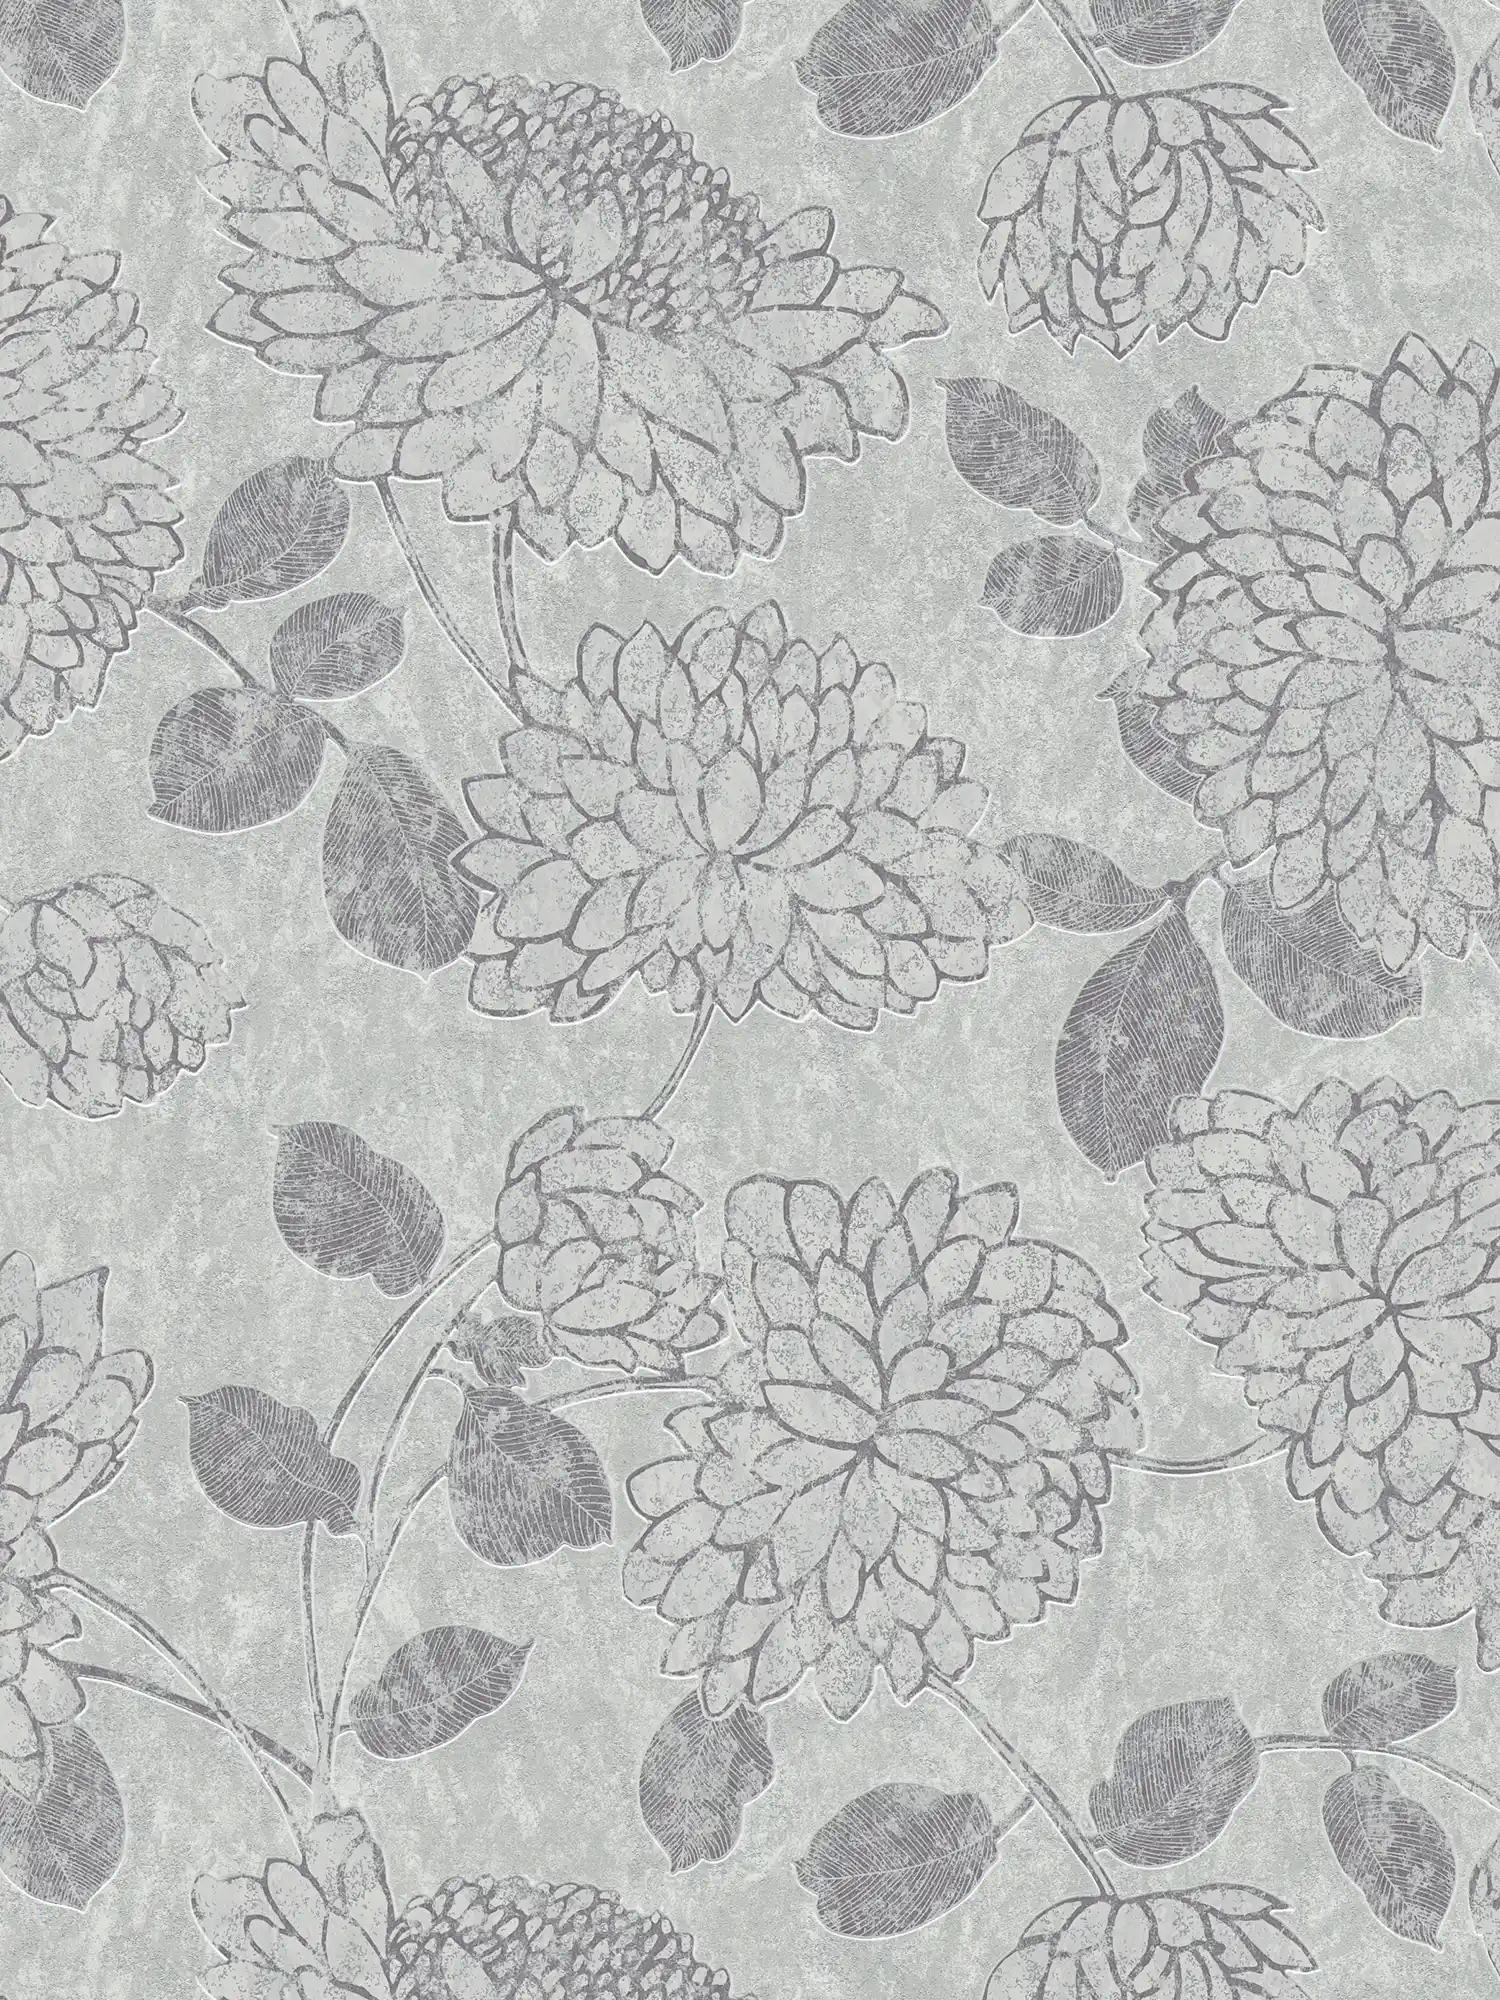 Vliestapete mit Blumenmuster und Glanz-Effekt – Hellgrau, Silber
